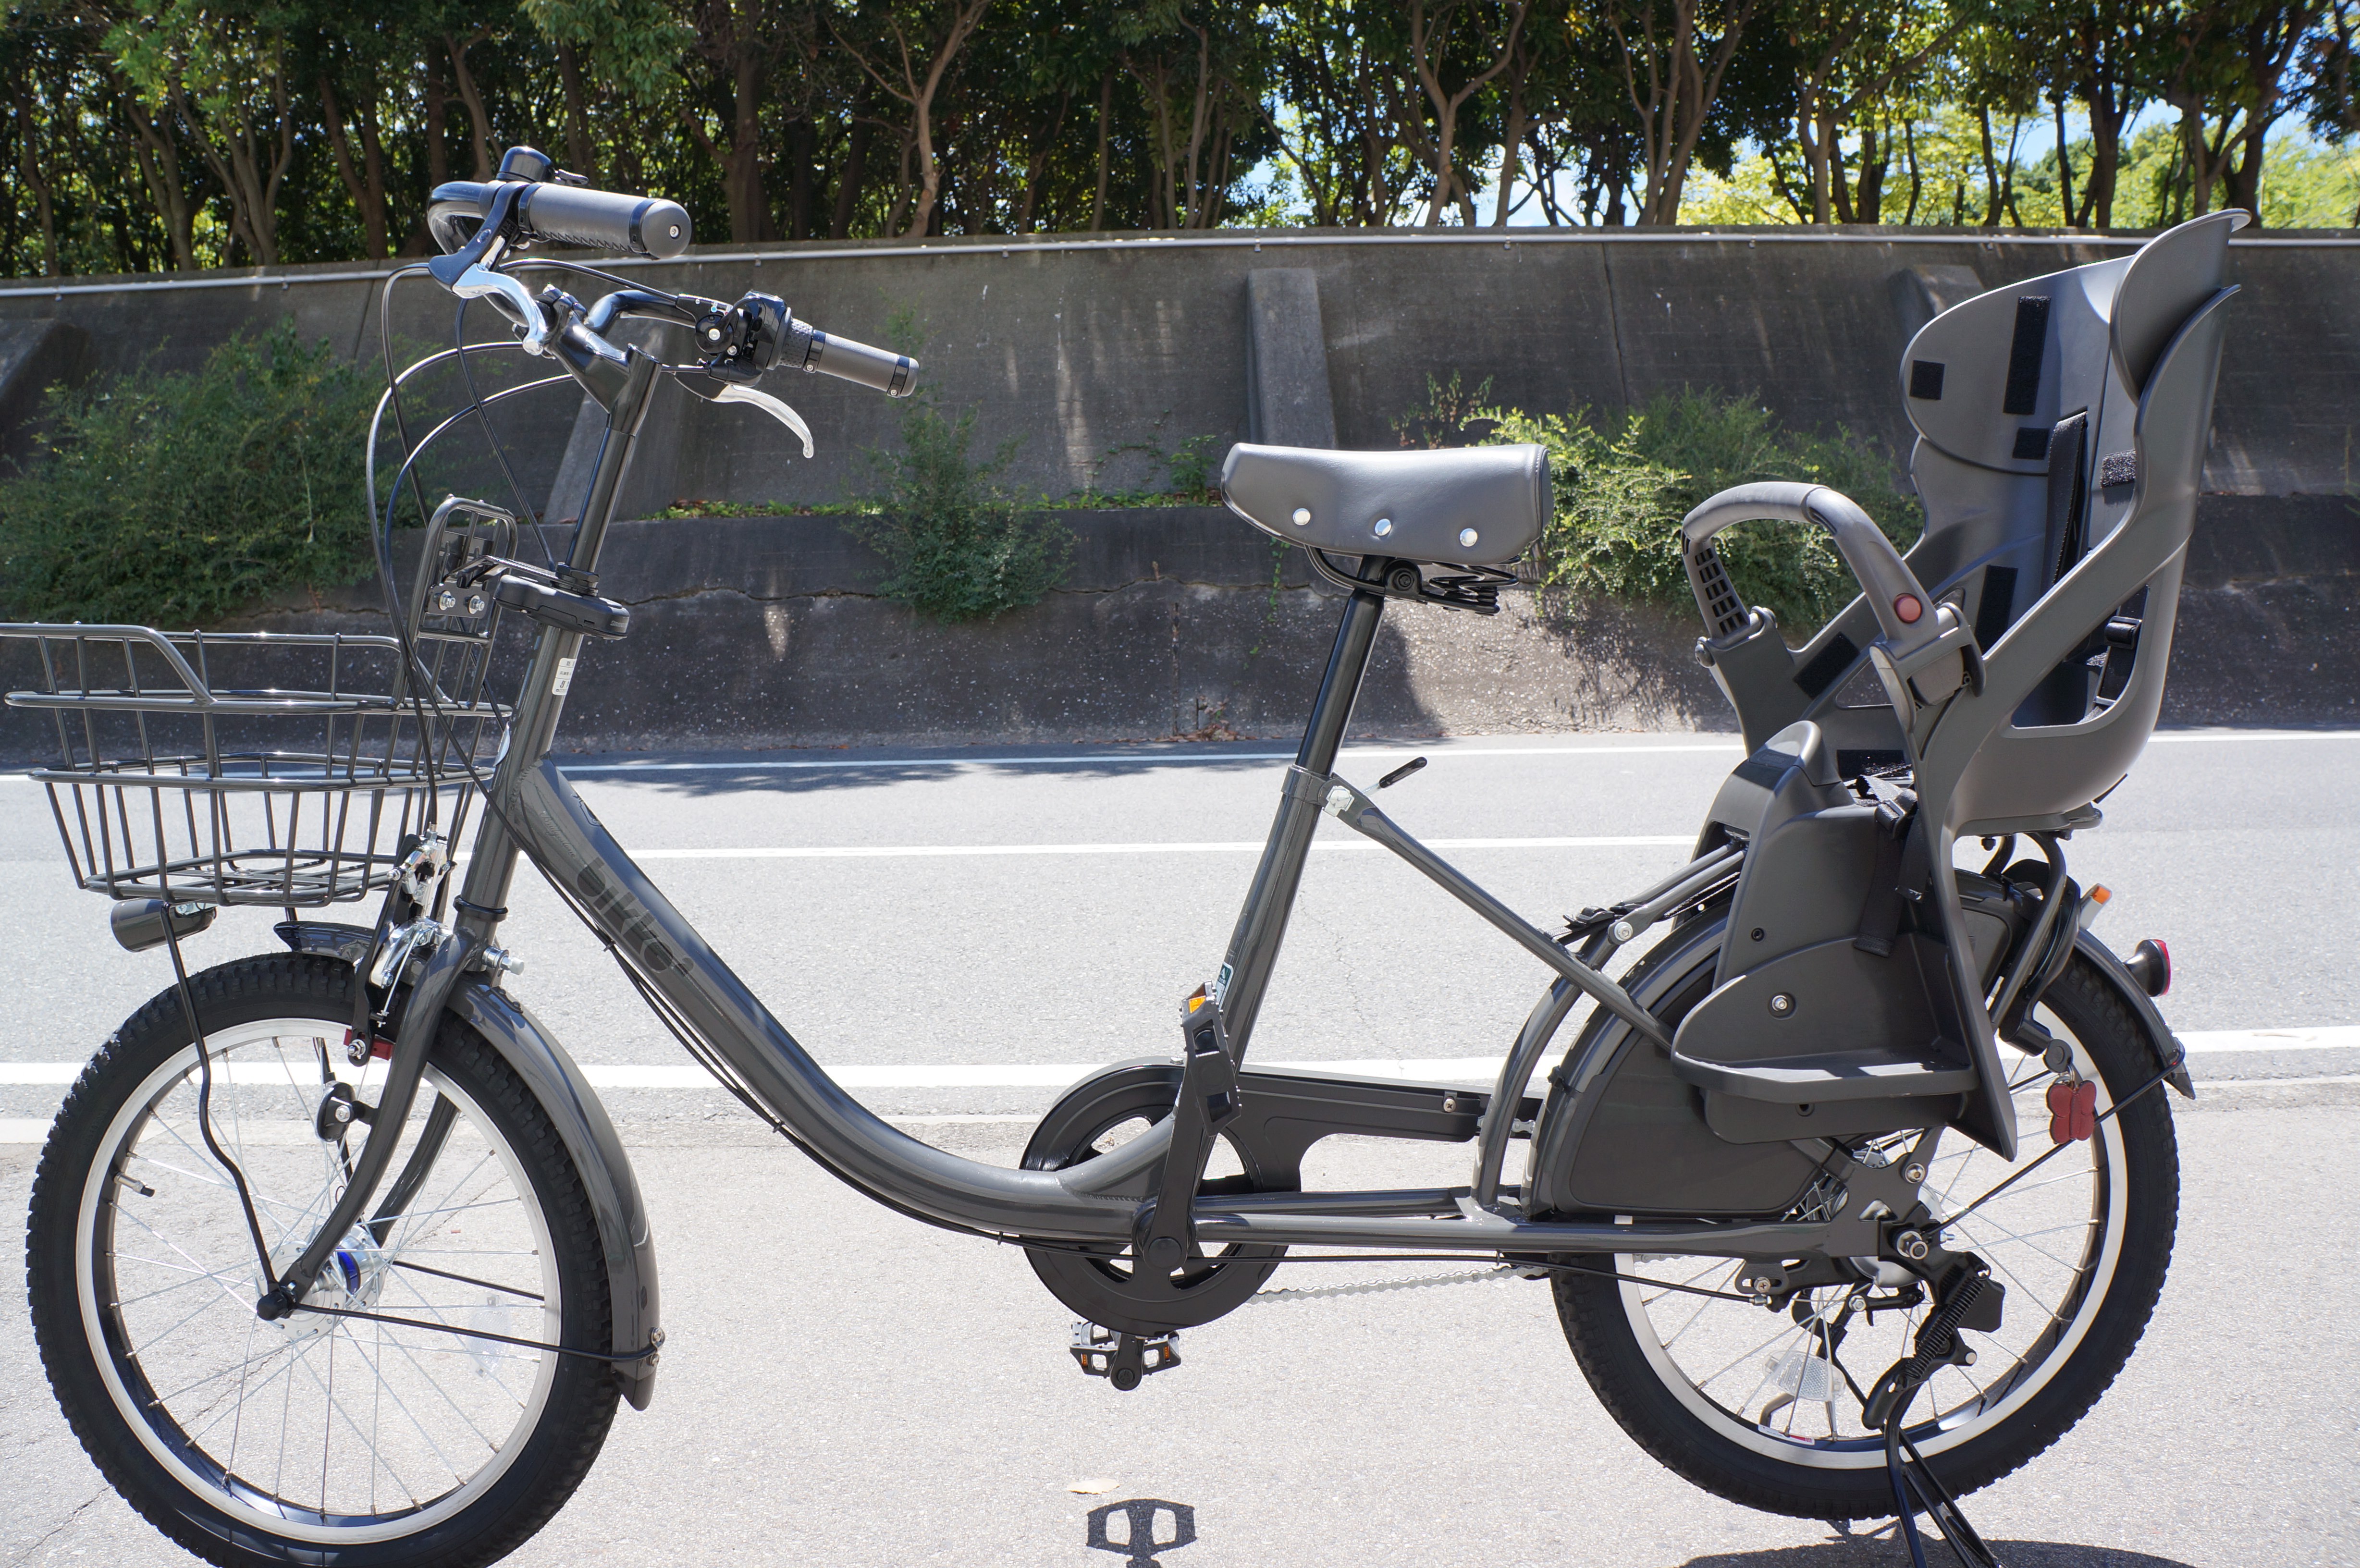 ファミリー向け自転車bikke 2（ただし非電動）を購入したのでレビュー 